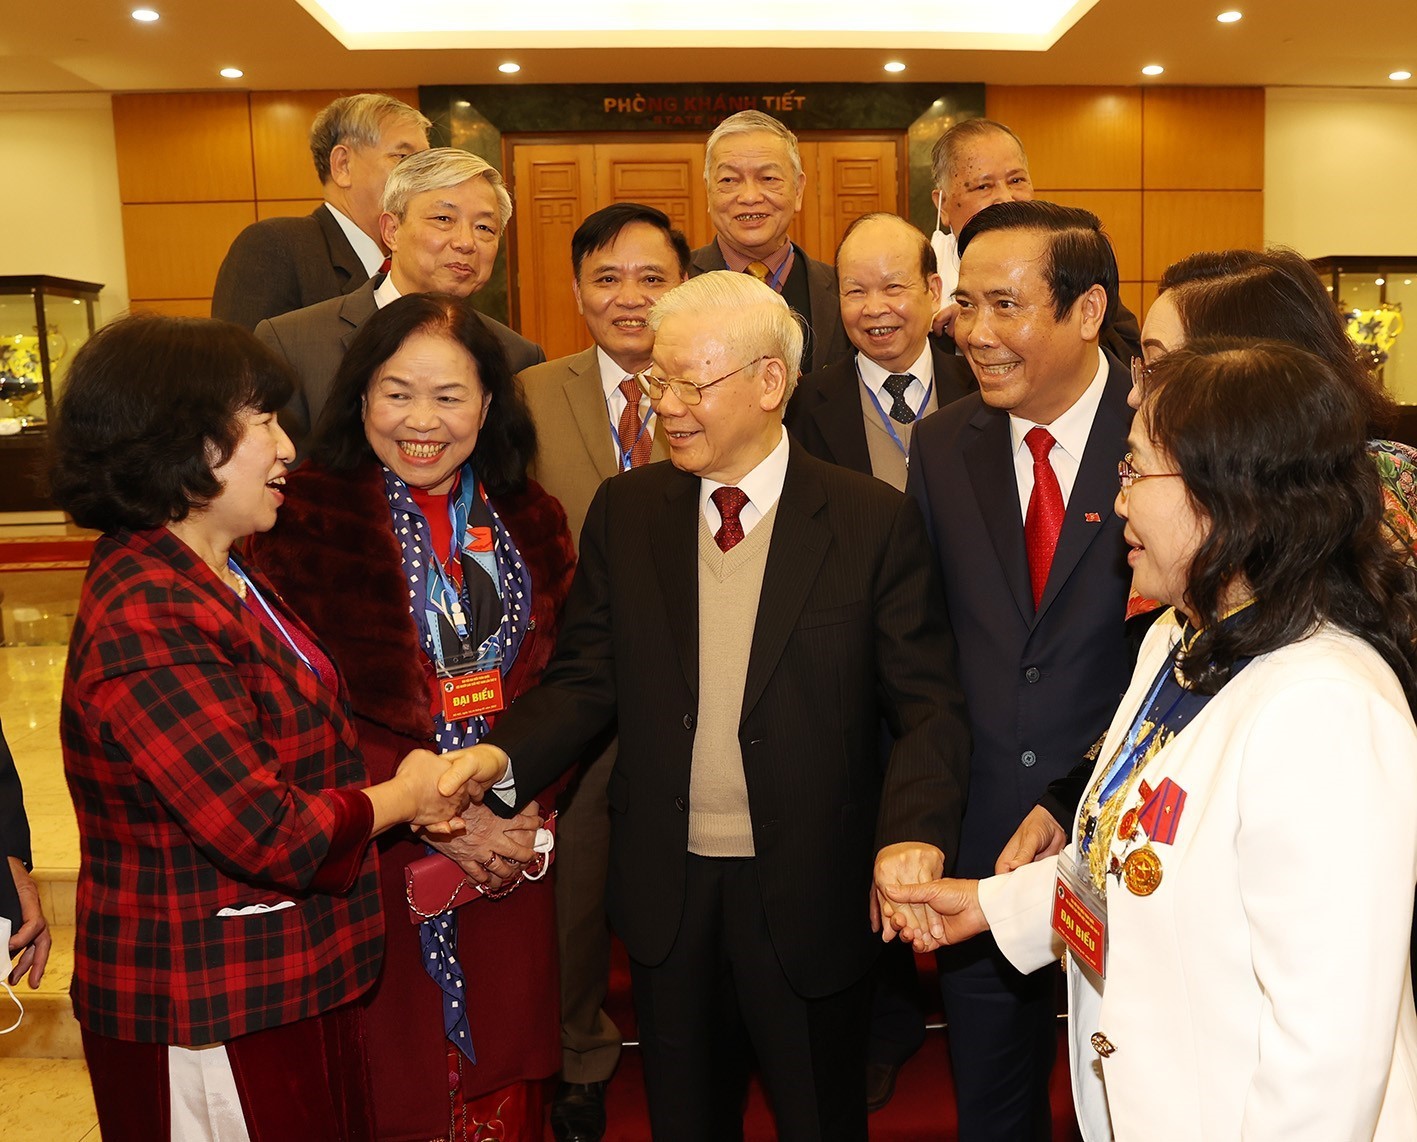 Tổng Bí thư Nguyễn Phú Trọng gặp gỡ đại biểu Hội Người cao tuổi Việt Nam_Ảnh: TTXVN

